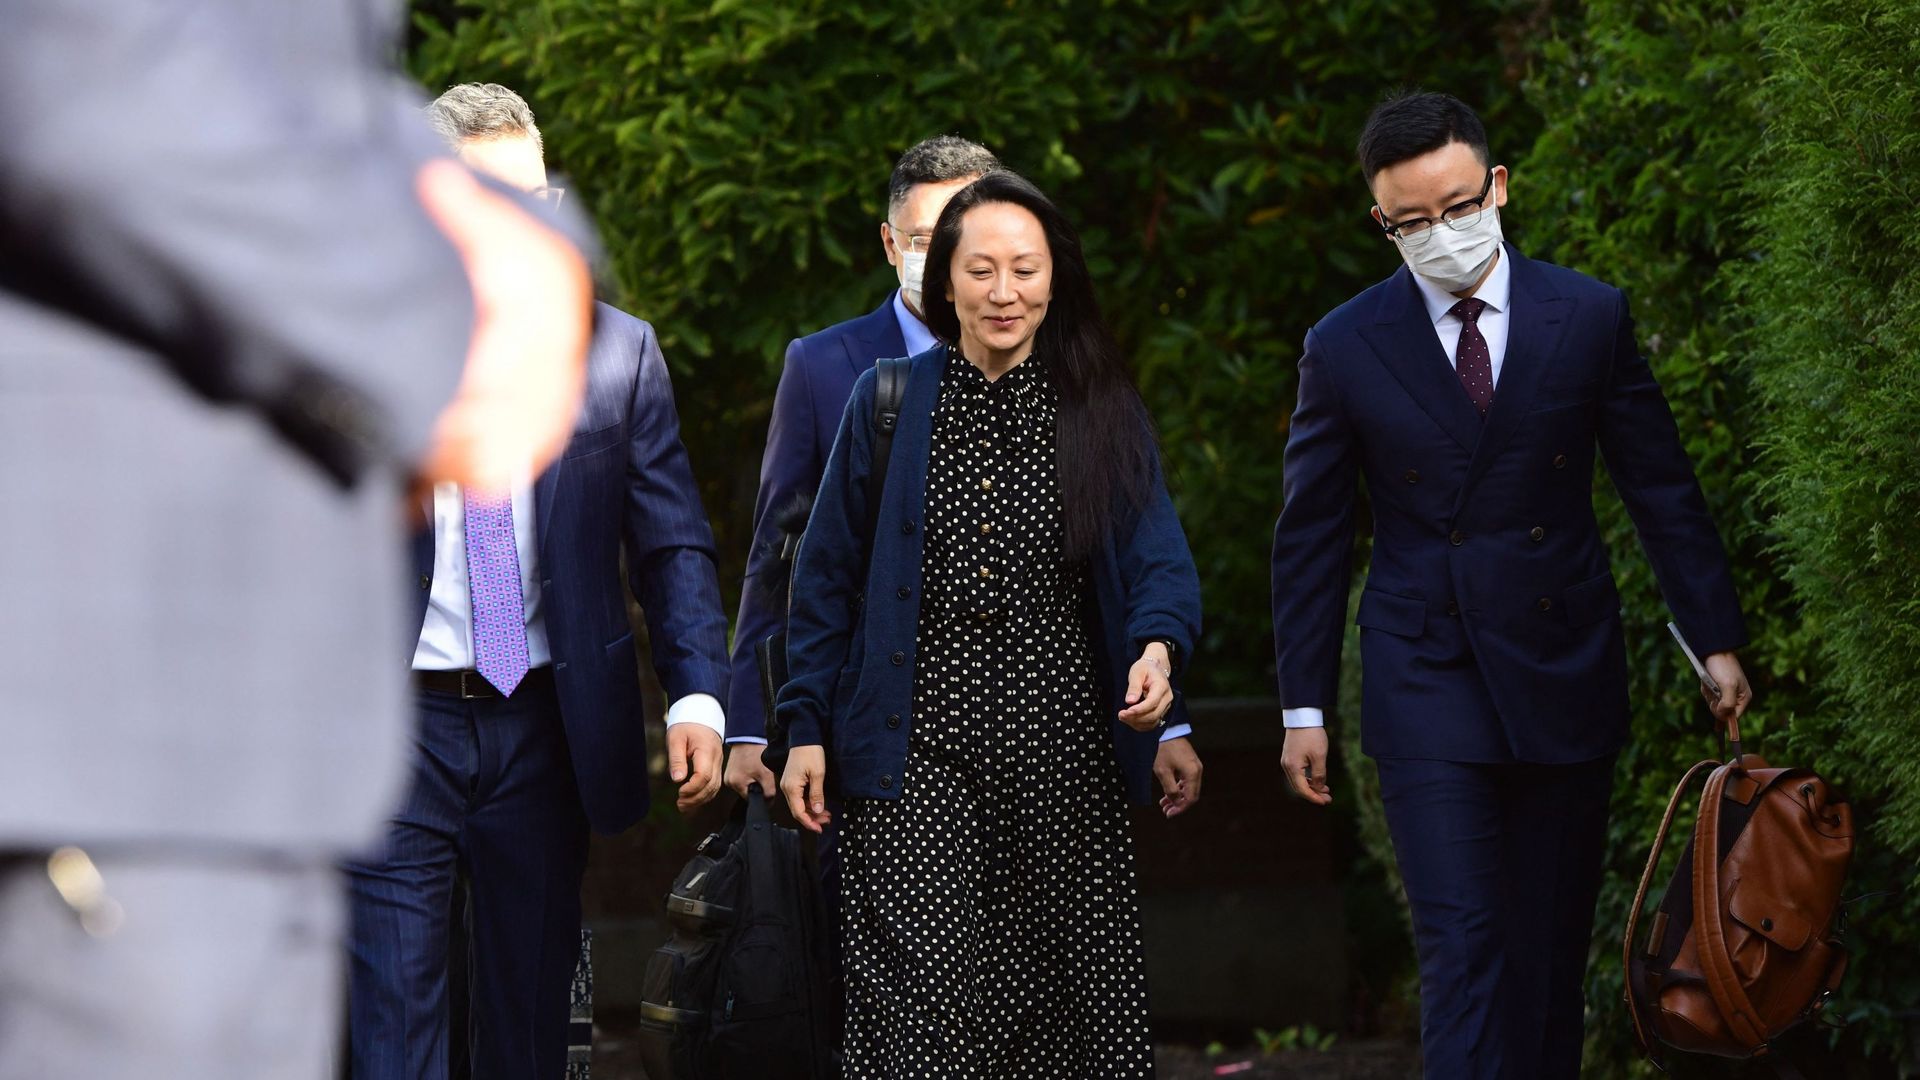 La directrice financière de Huawei bientôt en Chine après une longue bataille judiciaire